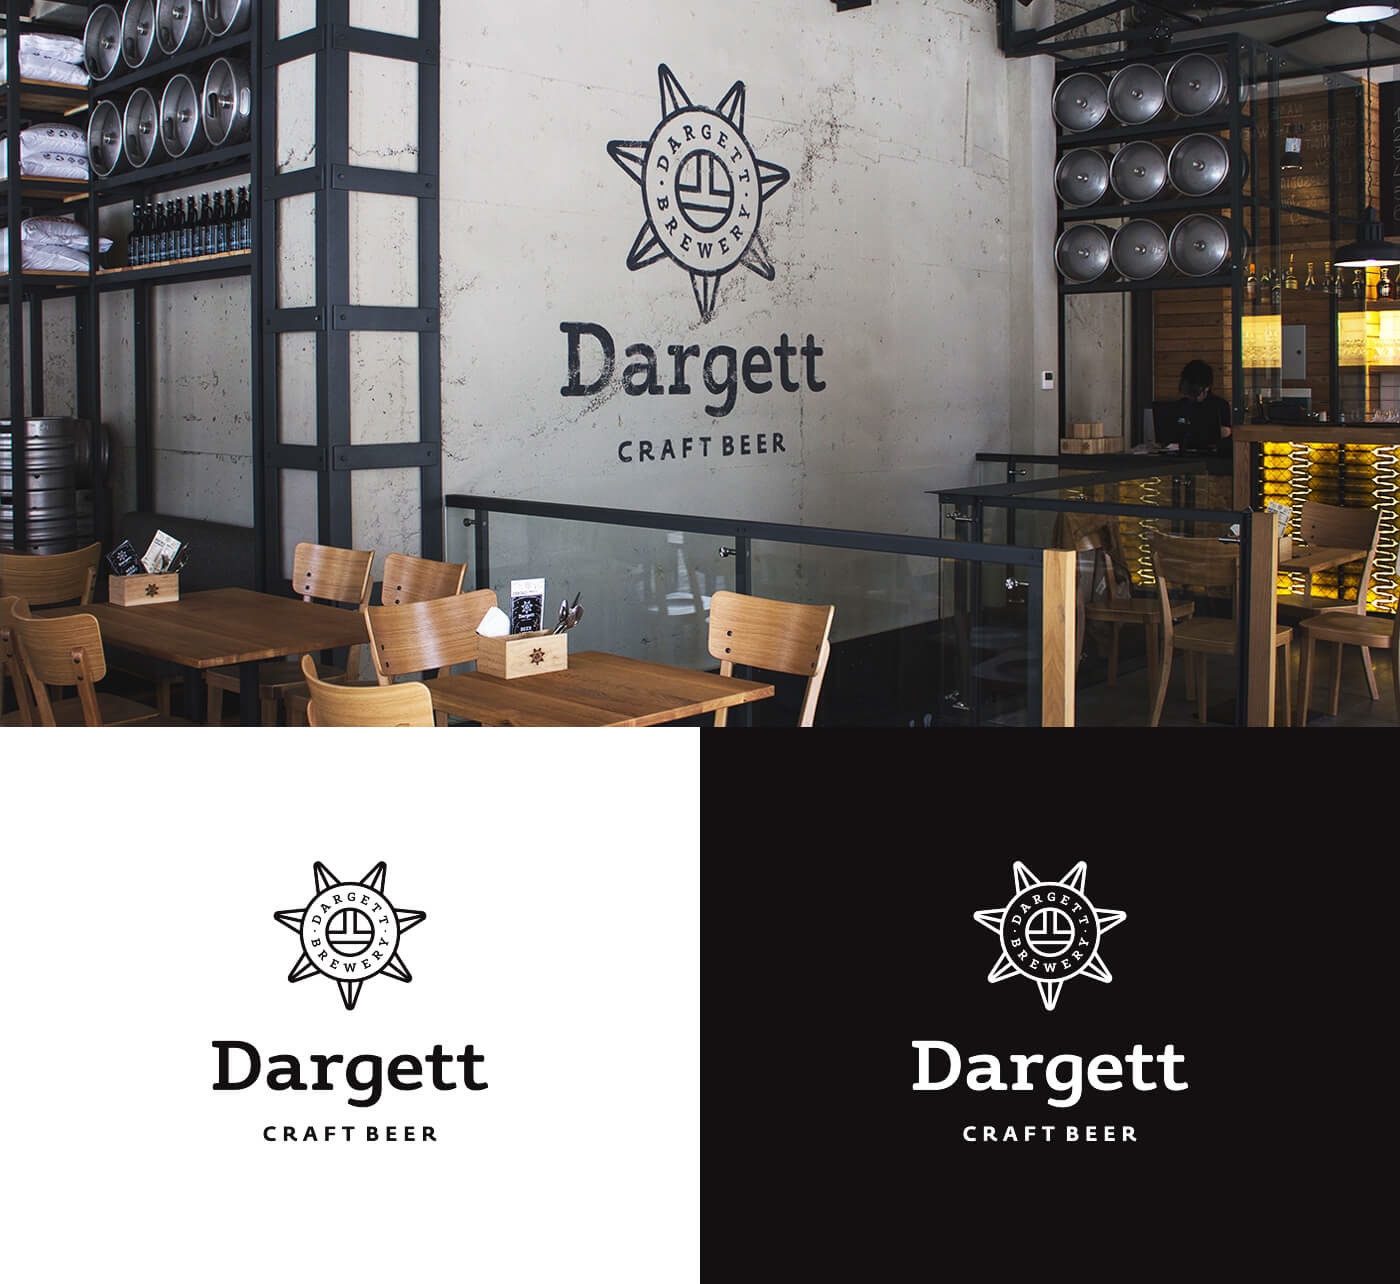 工艺啤酒Dargett品牌包装设计